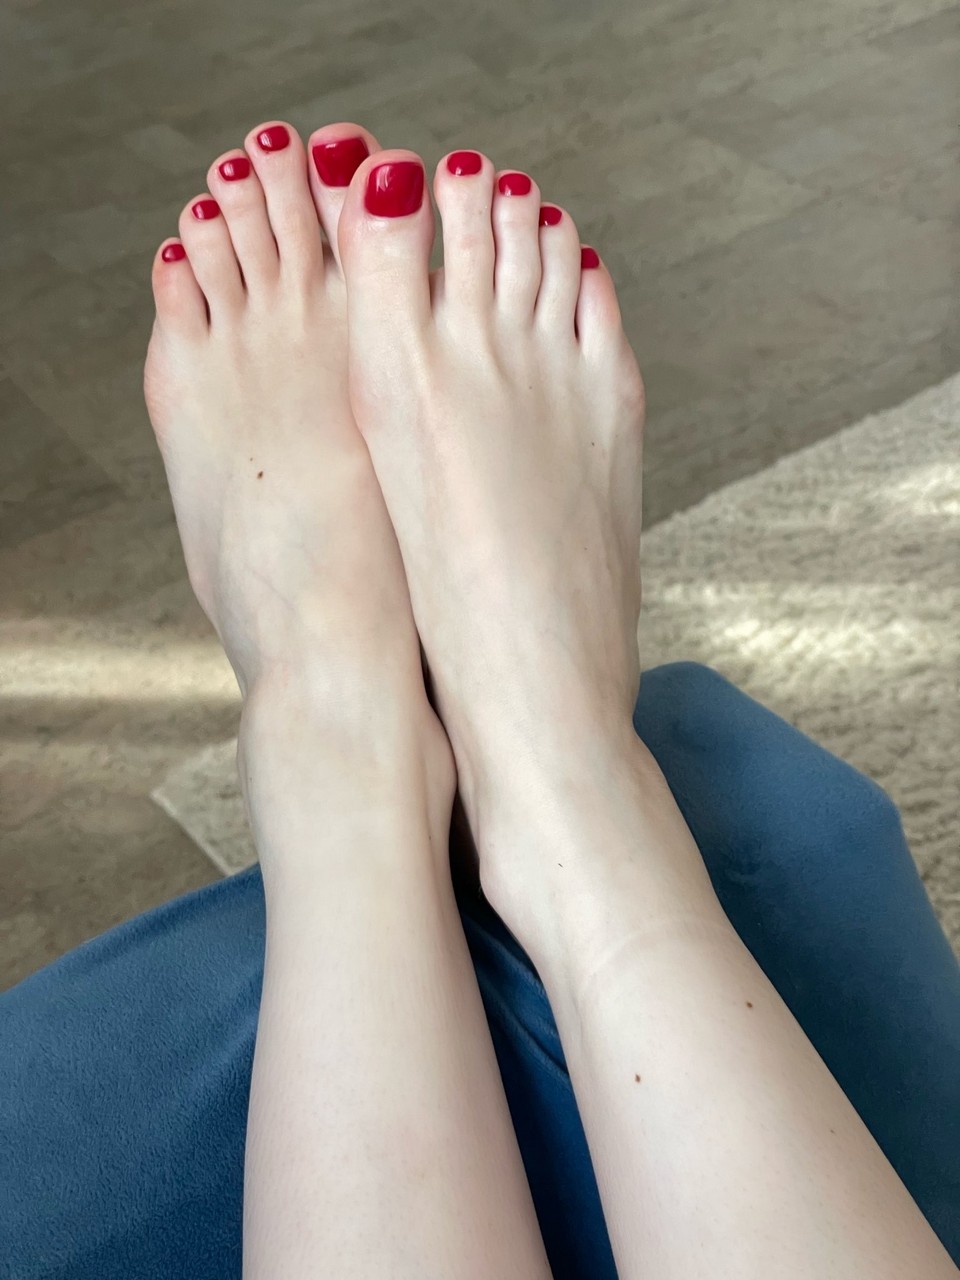 Polina Grents Feet